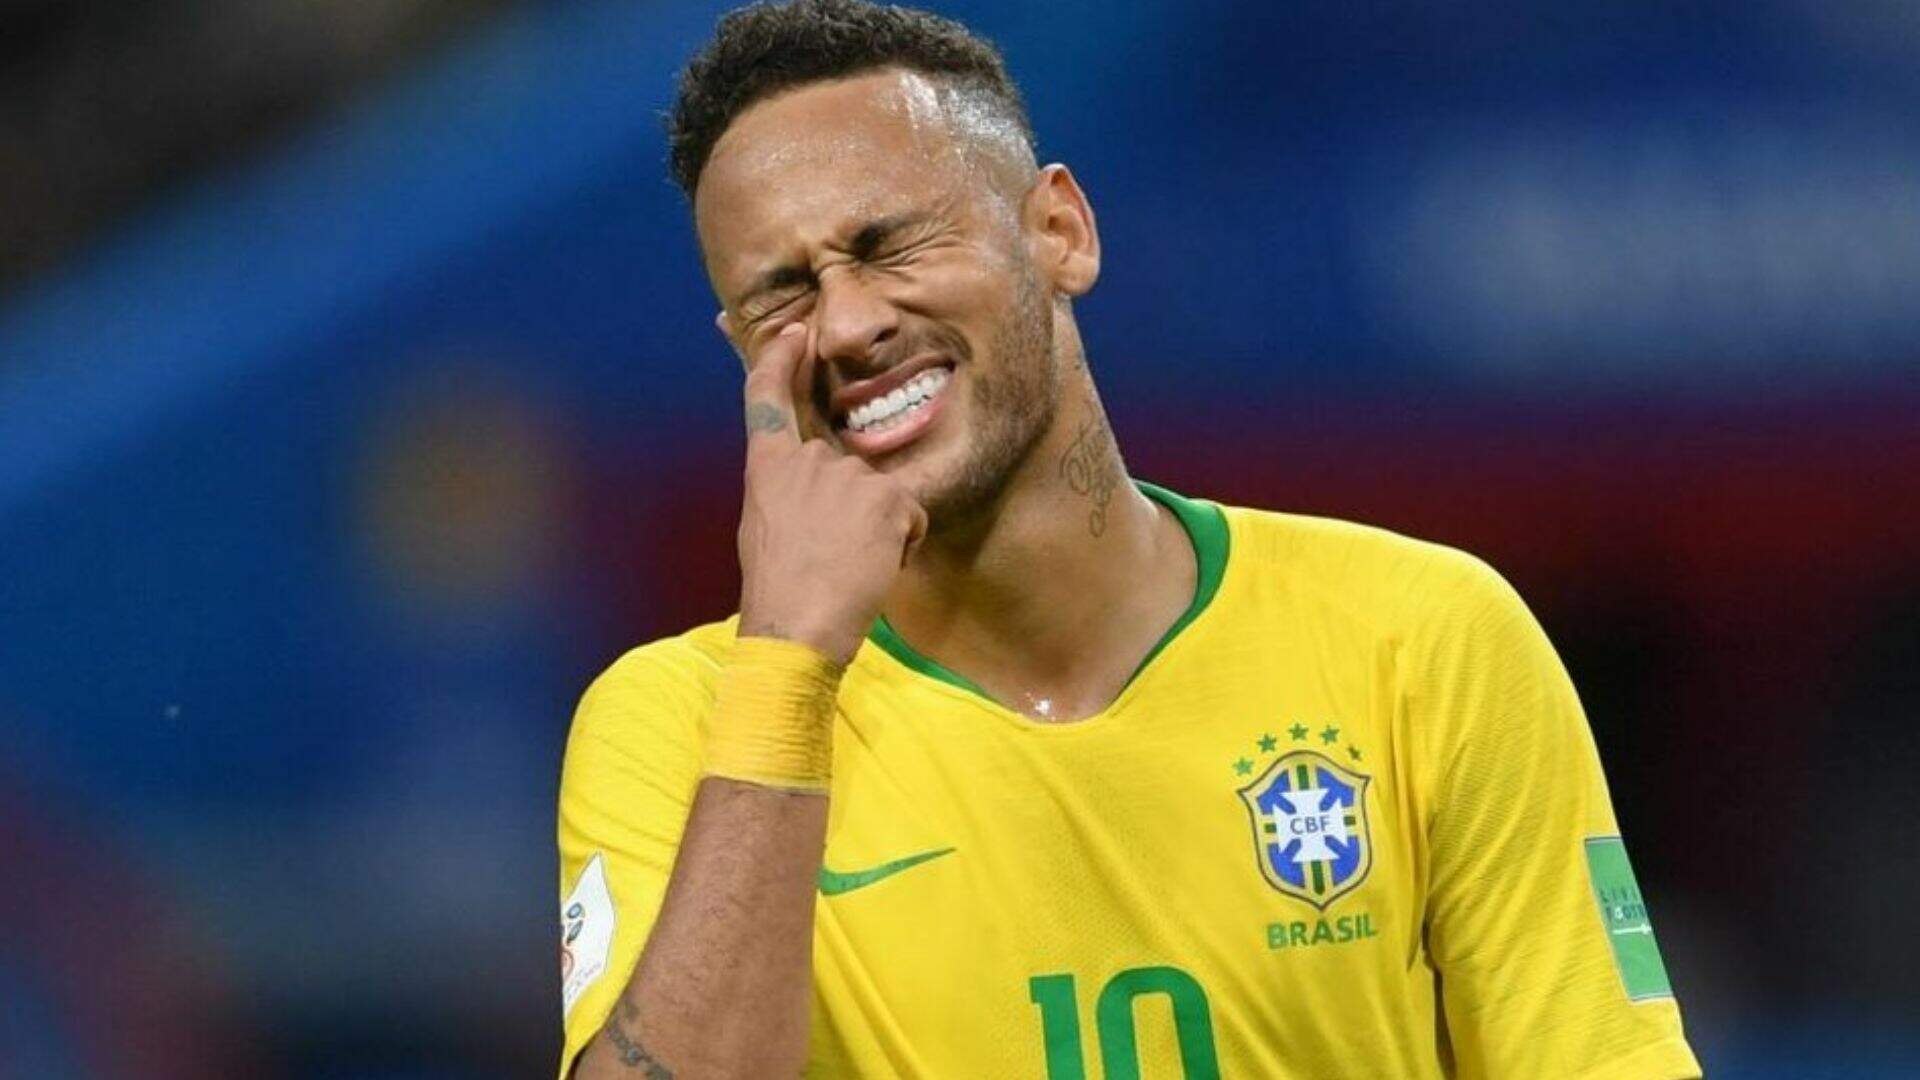 Prato de Neymar gera polêmica e discussão nas redes sociais e você não vai acreditar no motivo: “É cocô?” - Metropolitana FM